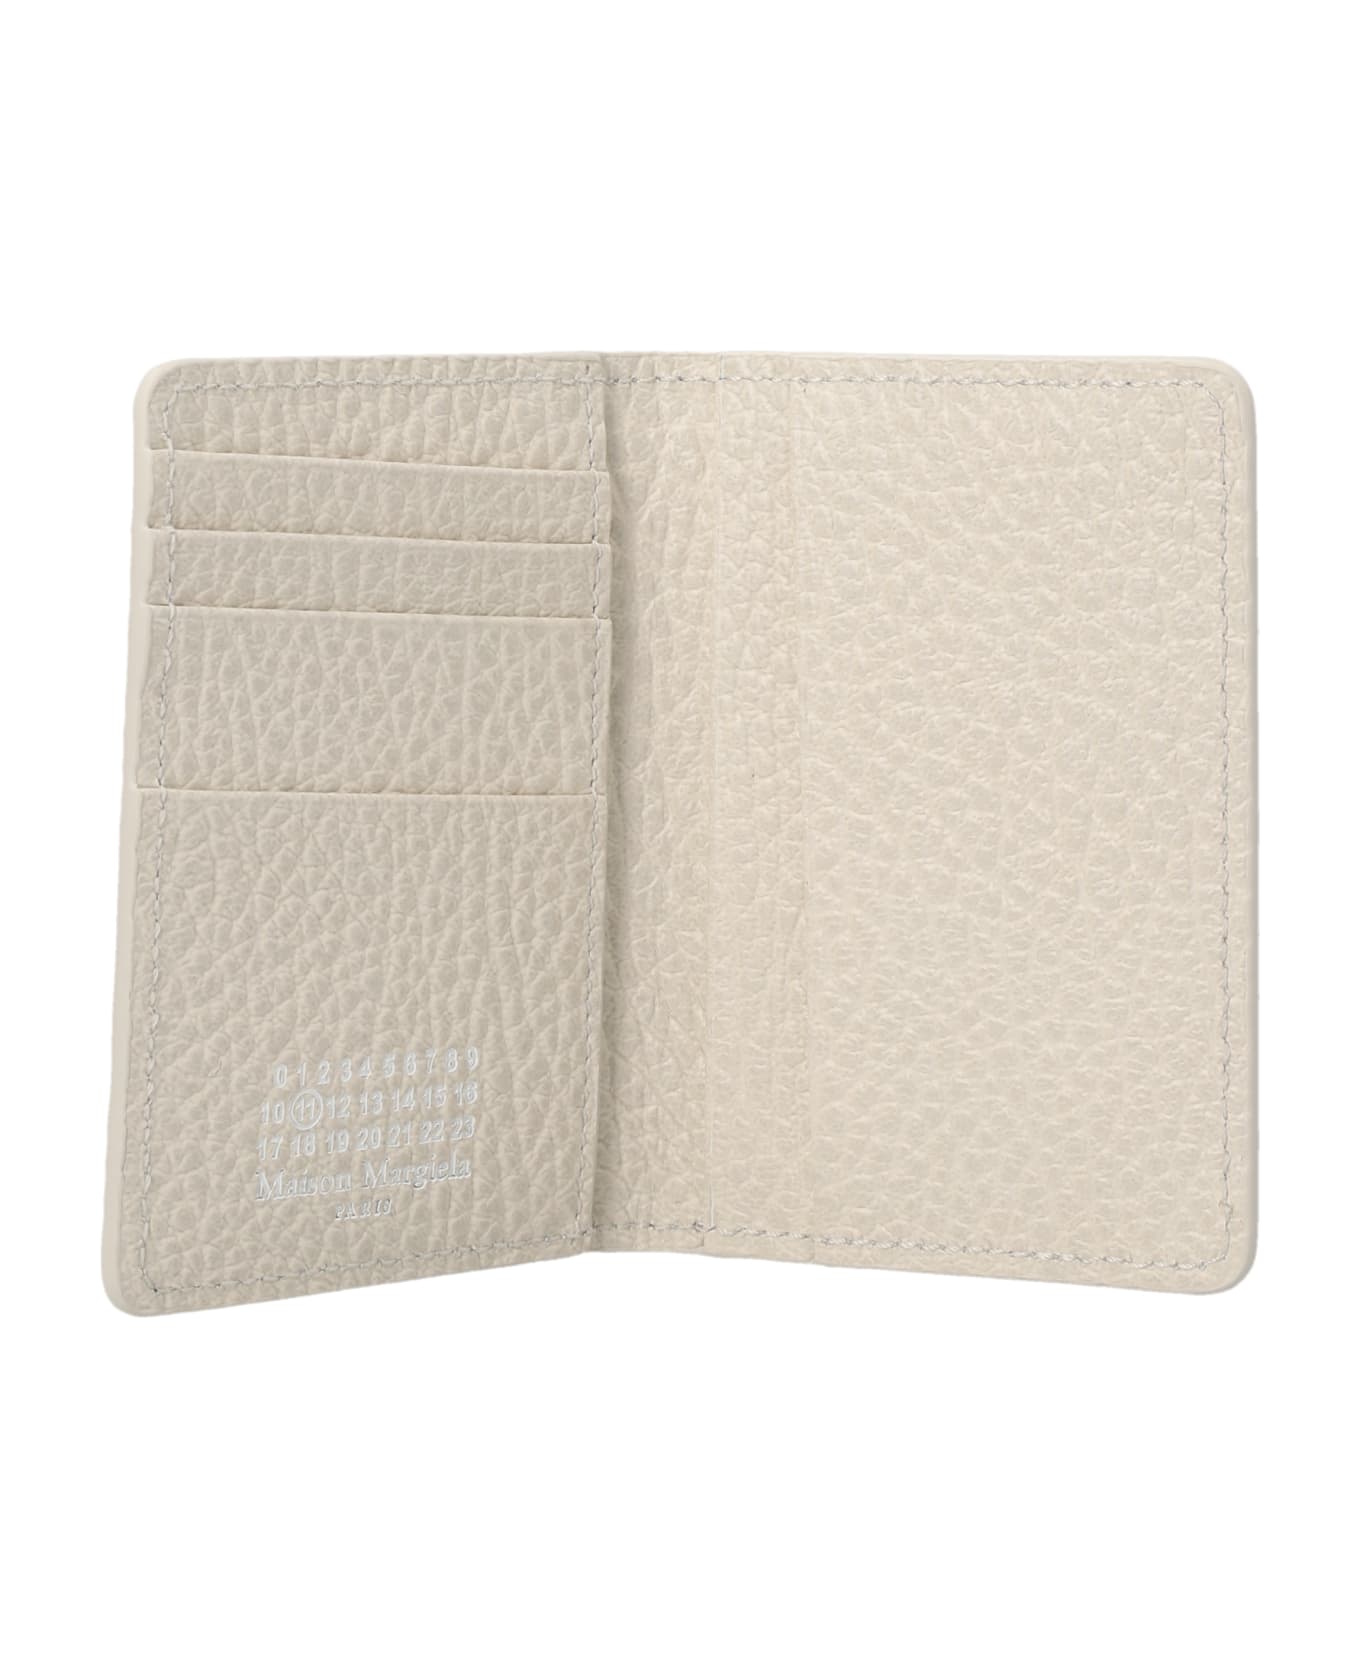 Maison Margiela Stitching  Card Holder - White 財布